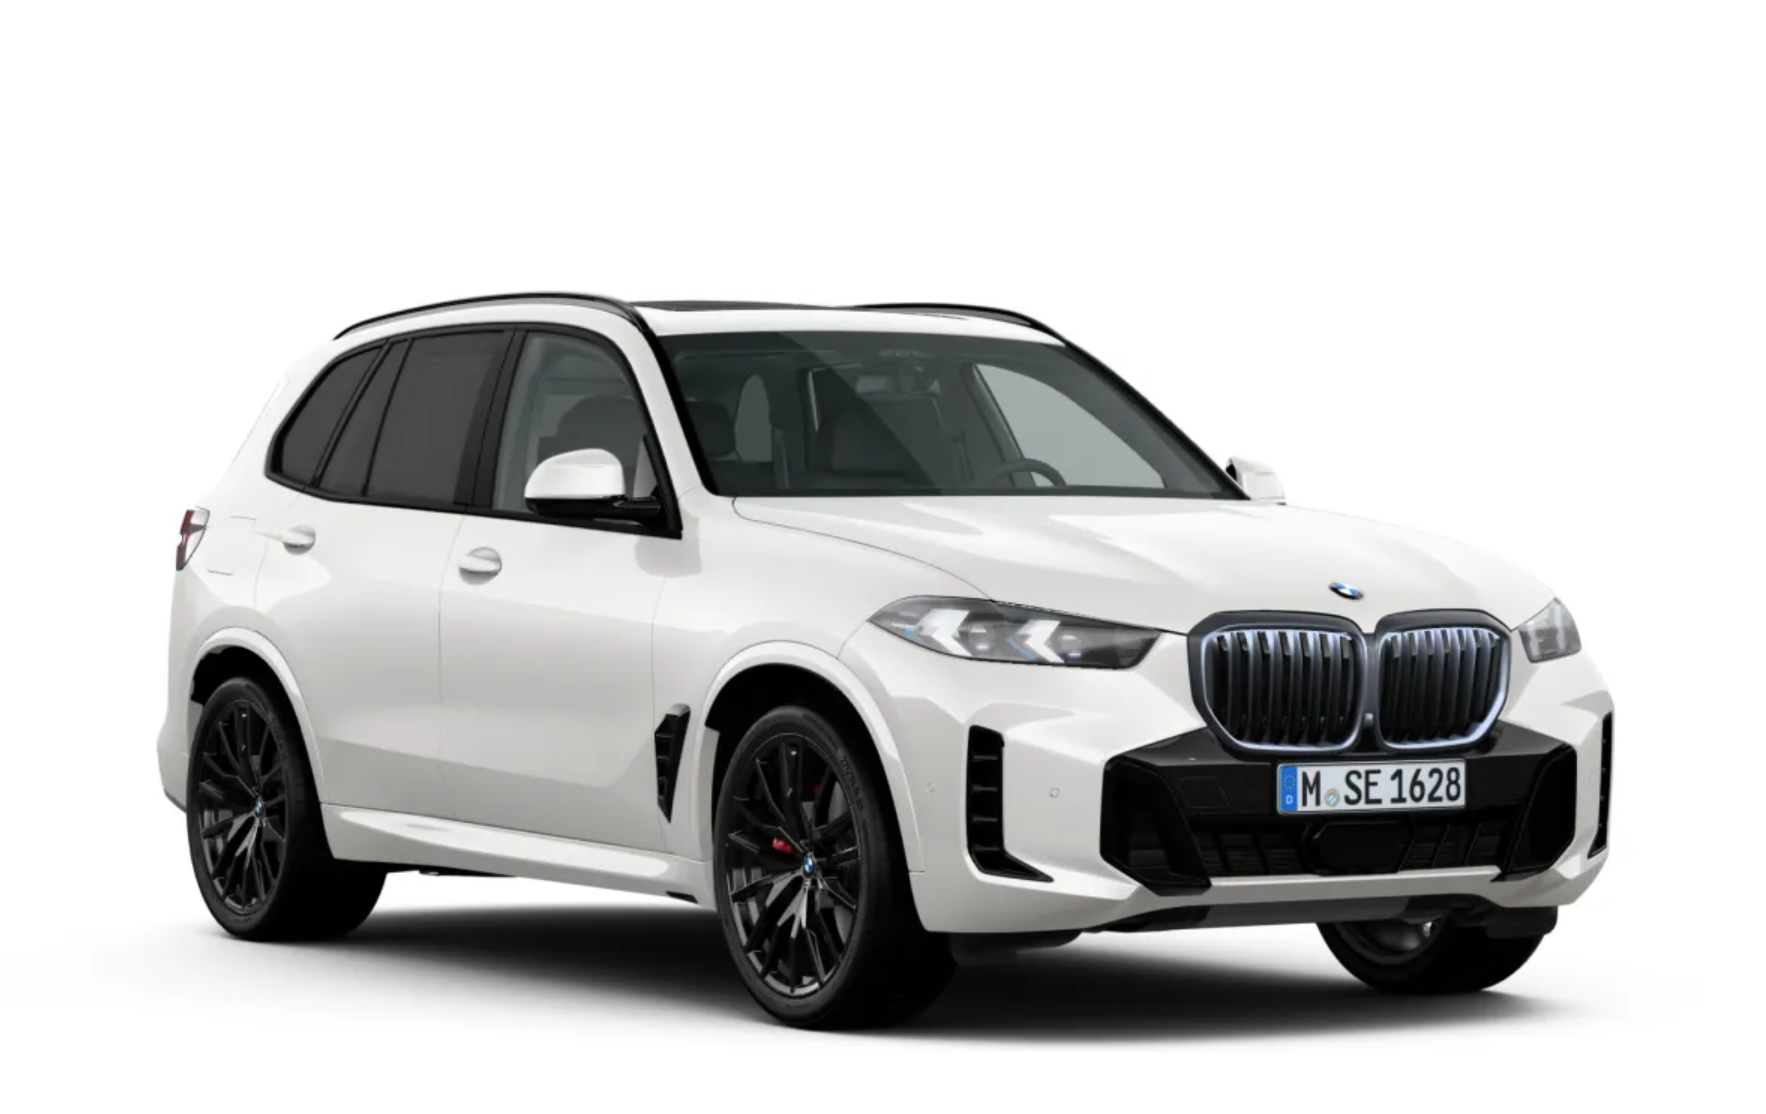 BMW X5 40d xDrive Msport | nové auto objednané do výroby | FACELIFT | sportovně luxusní naftové SUV | maximální výbava | skvělá cena | předání do 4-6 měsíců | objednání online | auto eshop AUTOiBUY.com